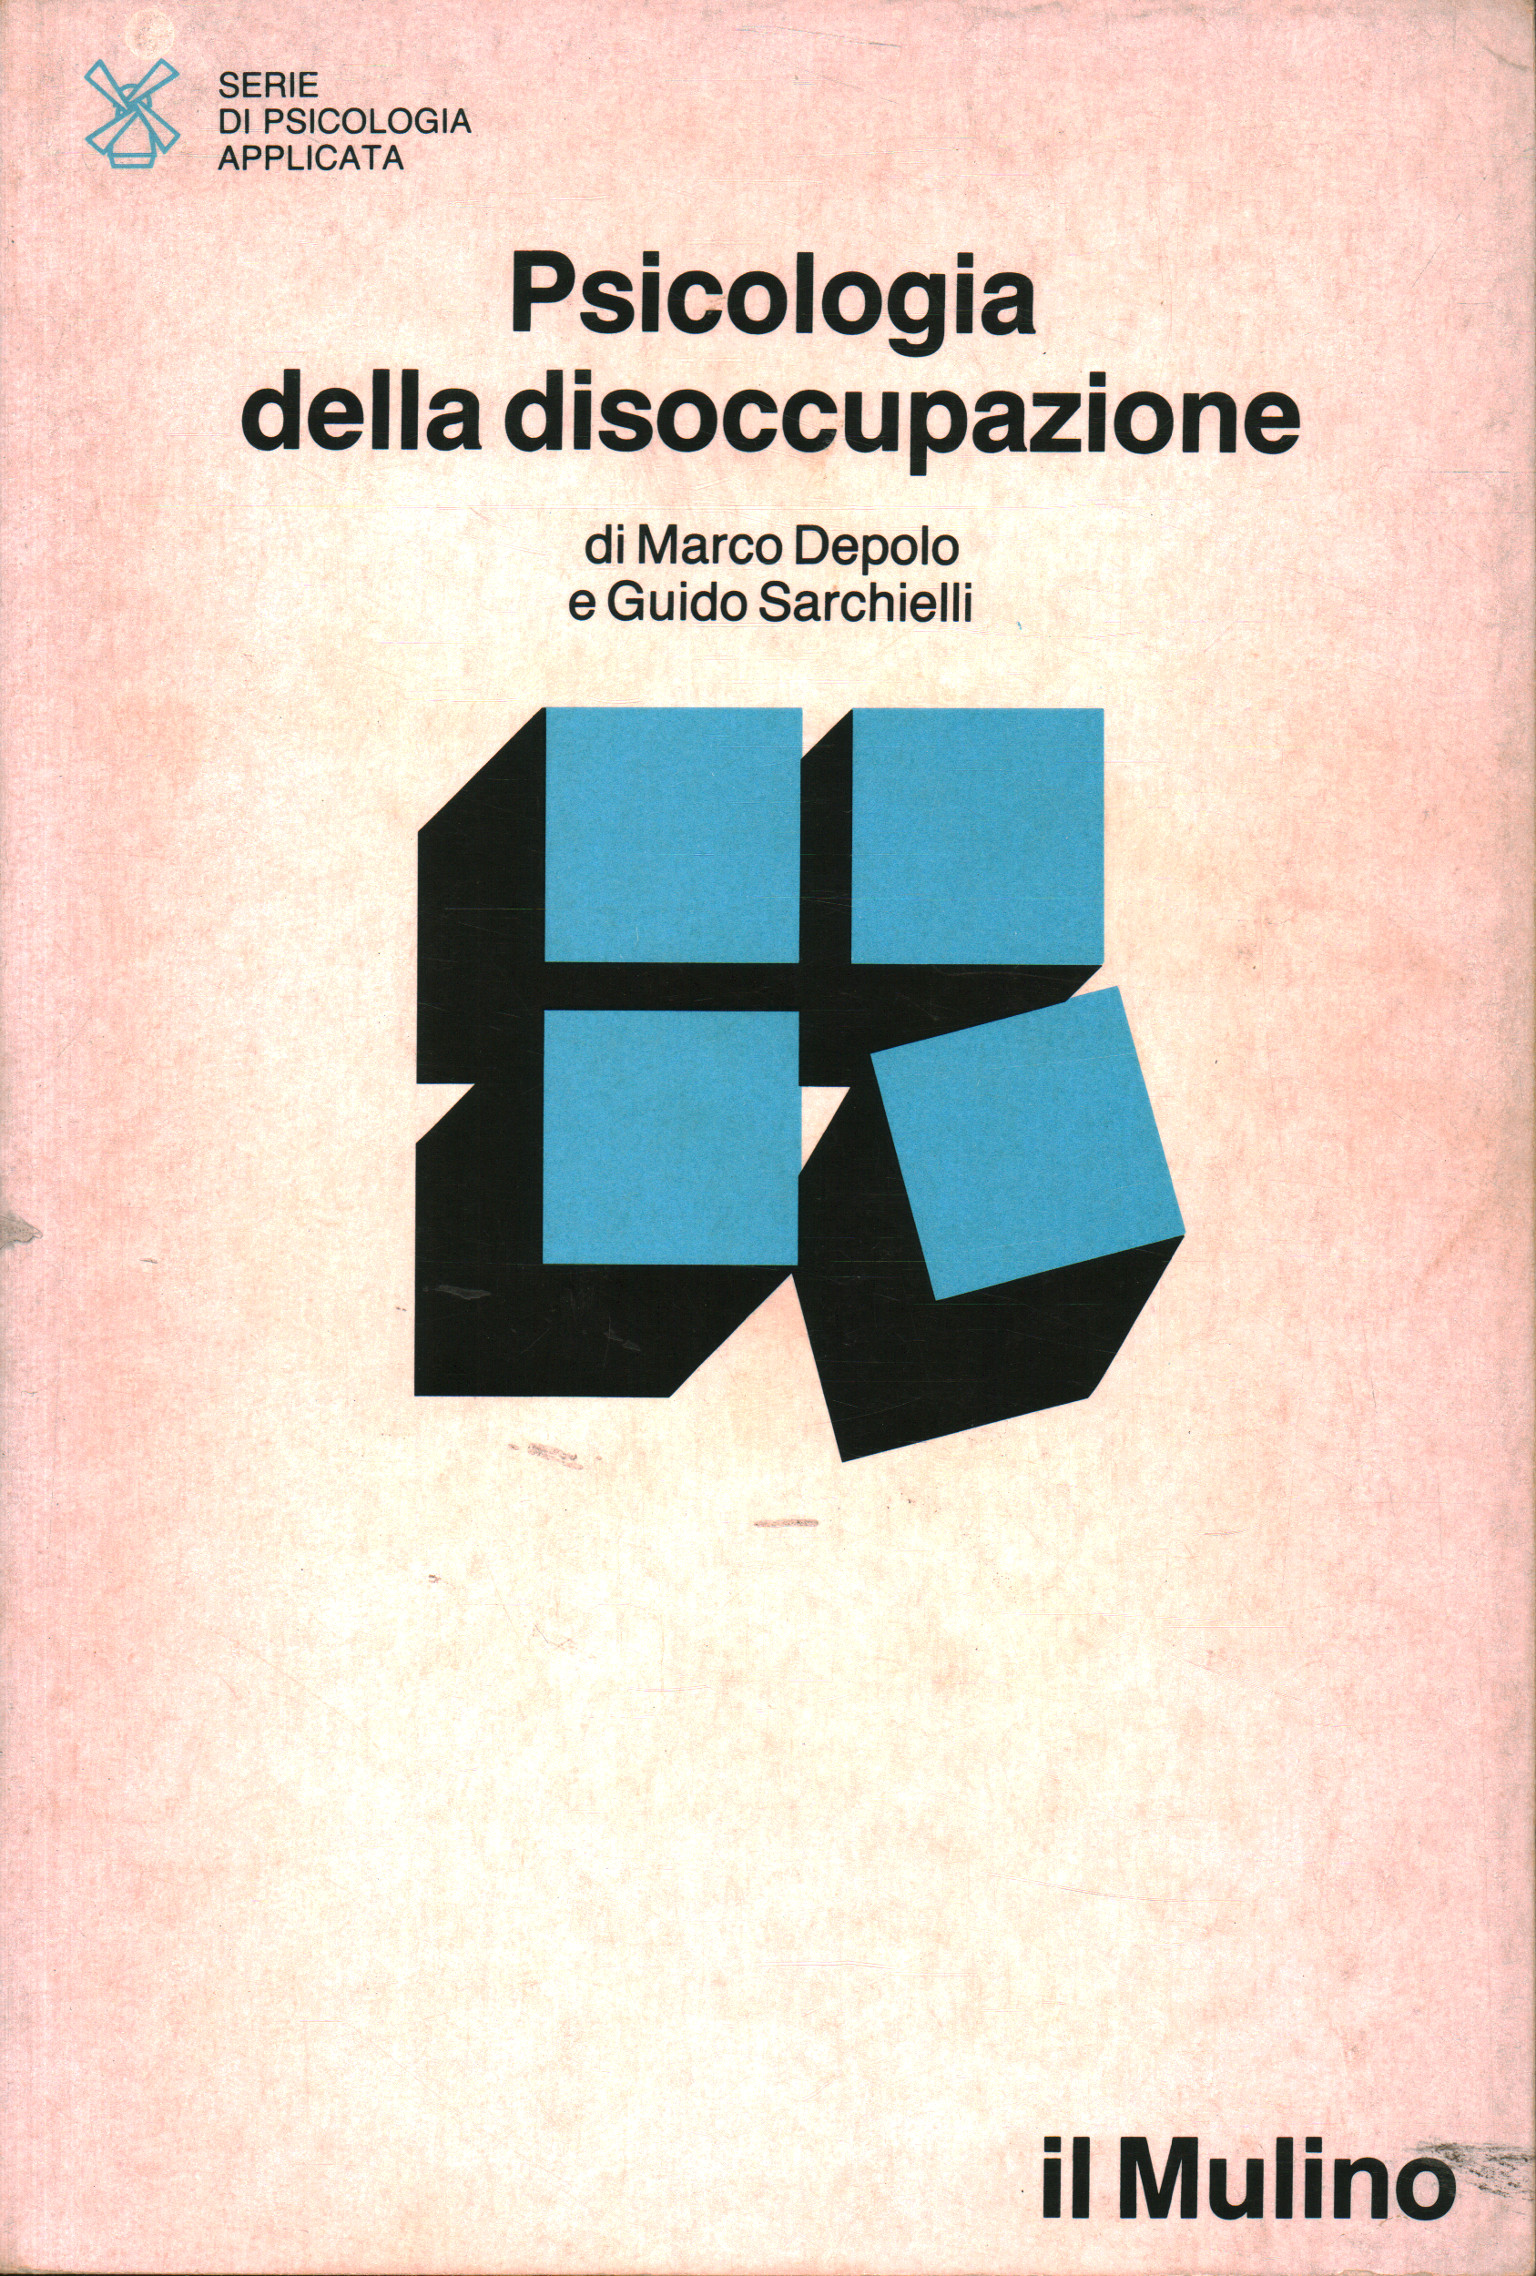 Psychologie der arbeitslosigkeit, Marco Depolo Guido Sarchielli